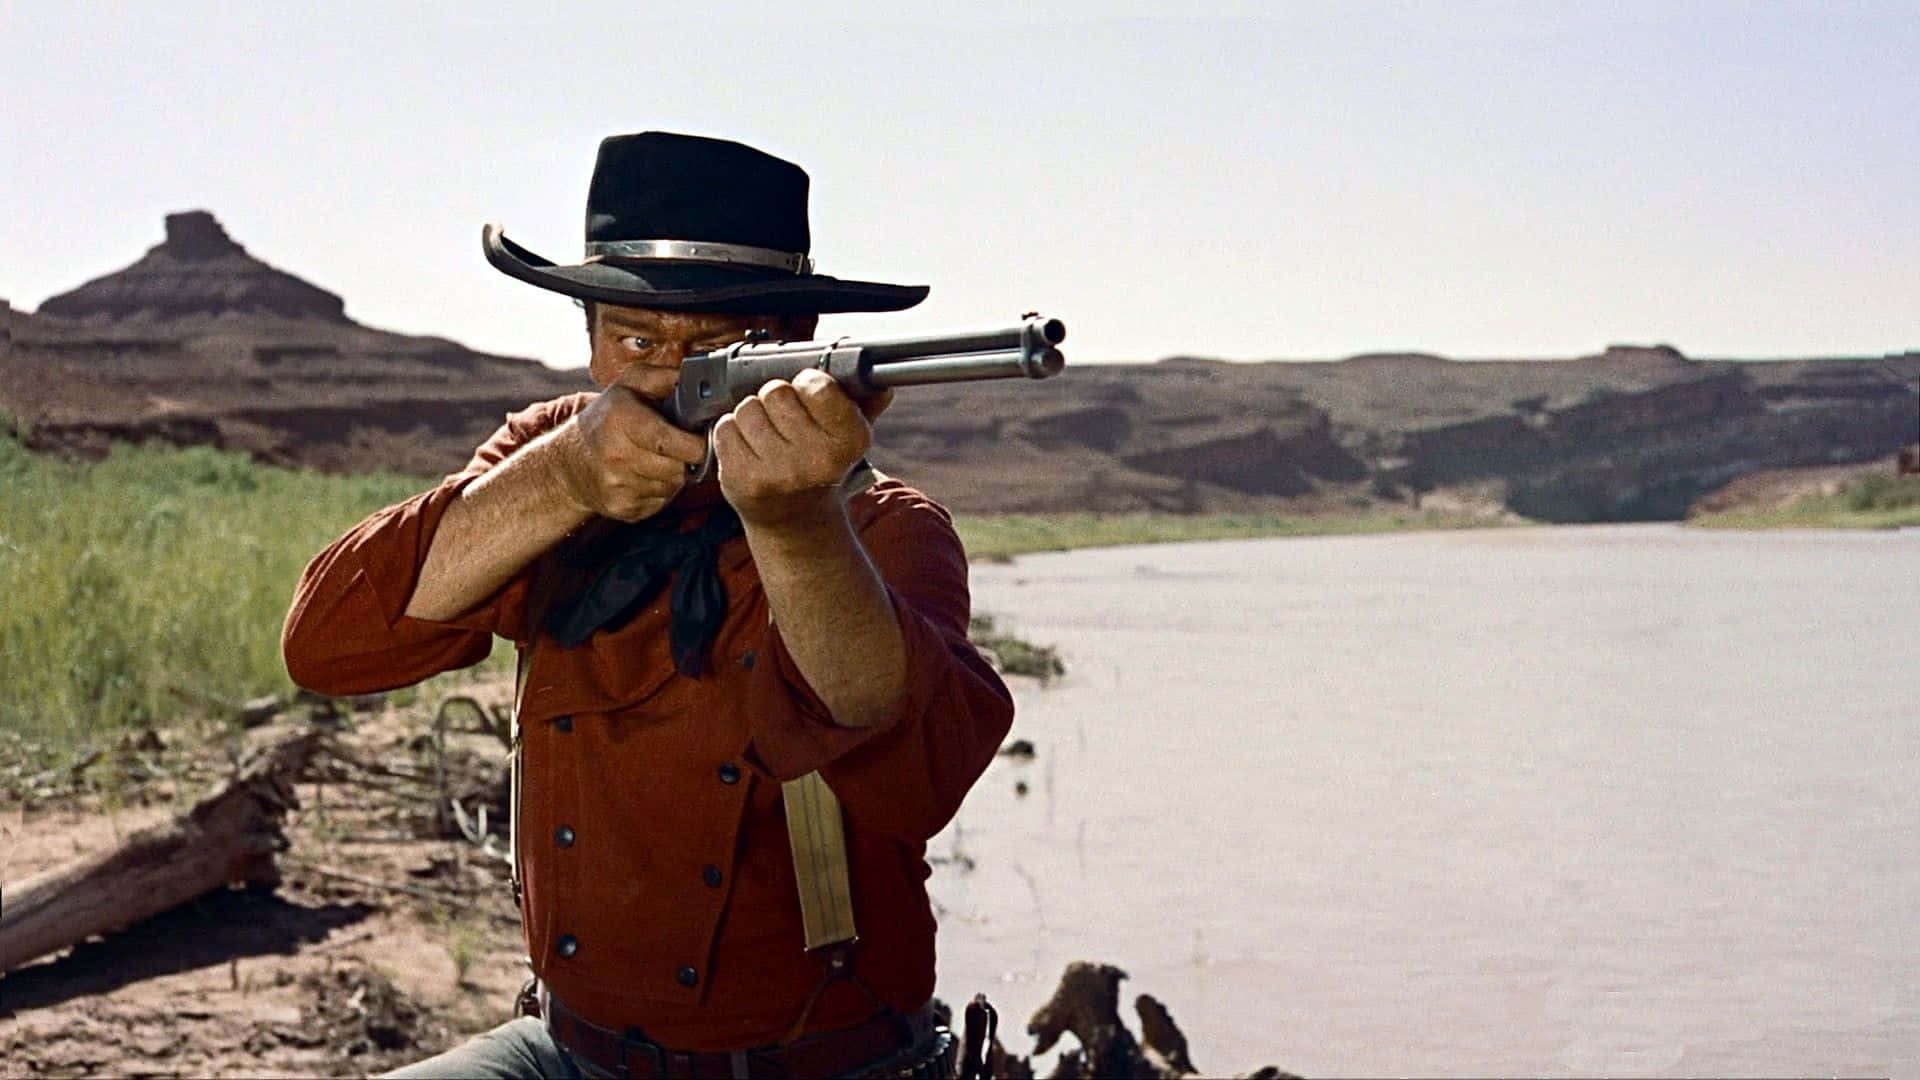 En ensom Cowboy står klar til Wild West's udfordring. Wallpaper